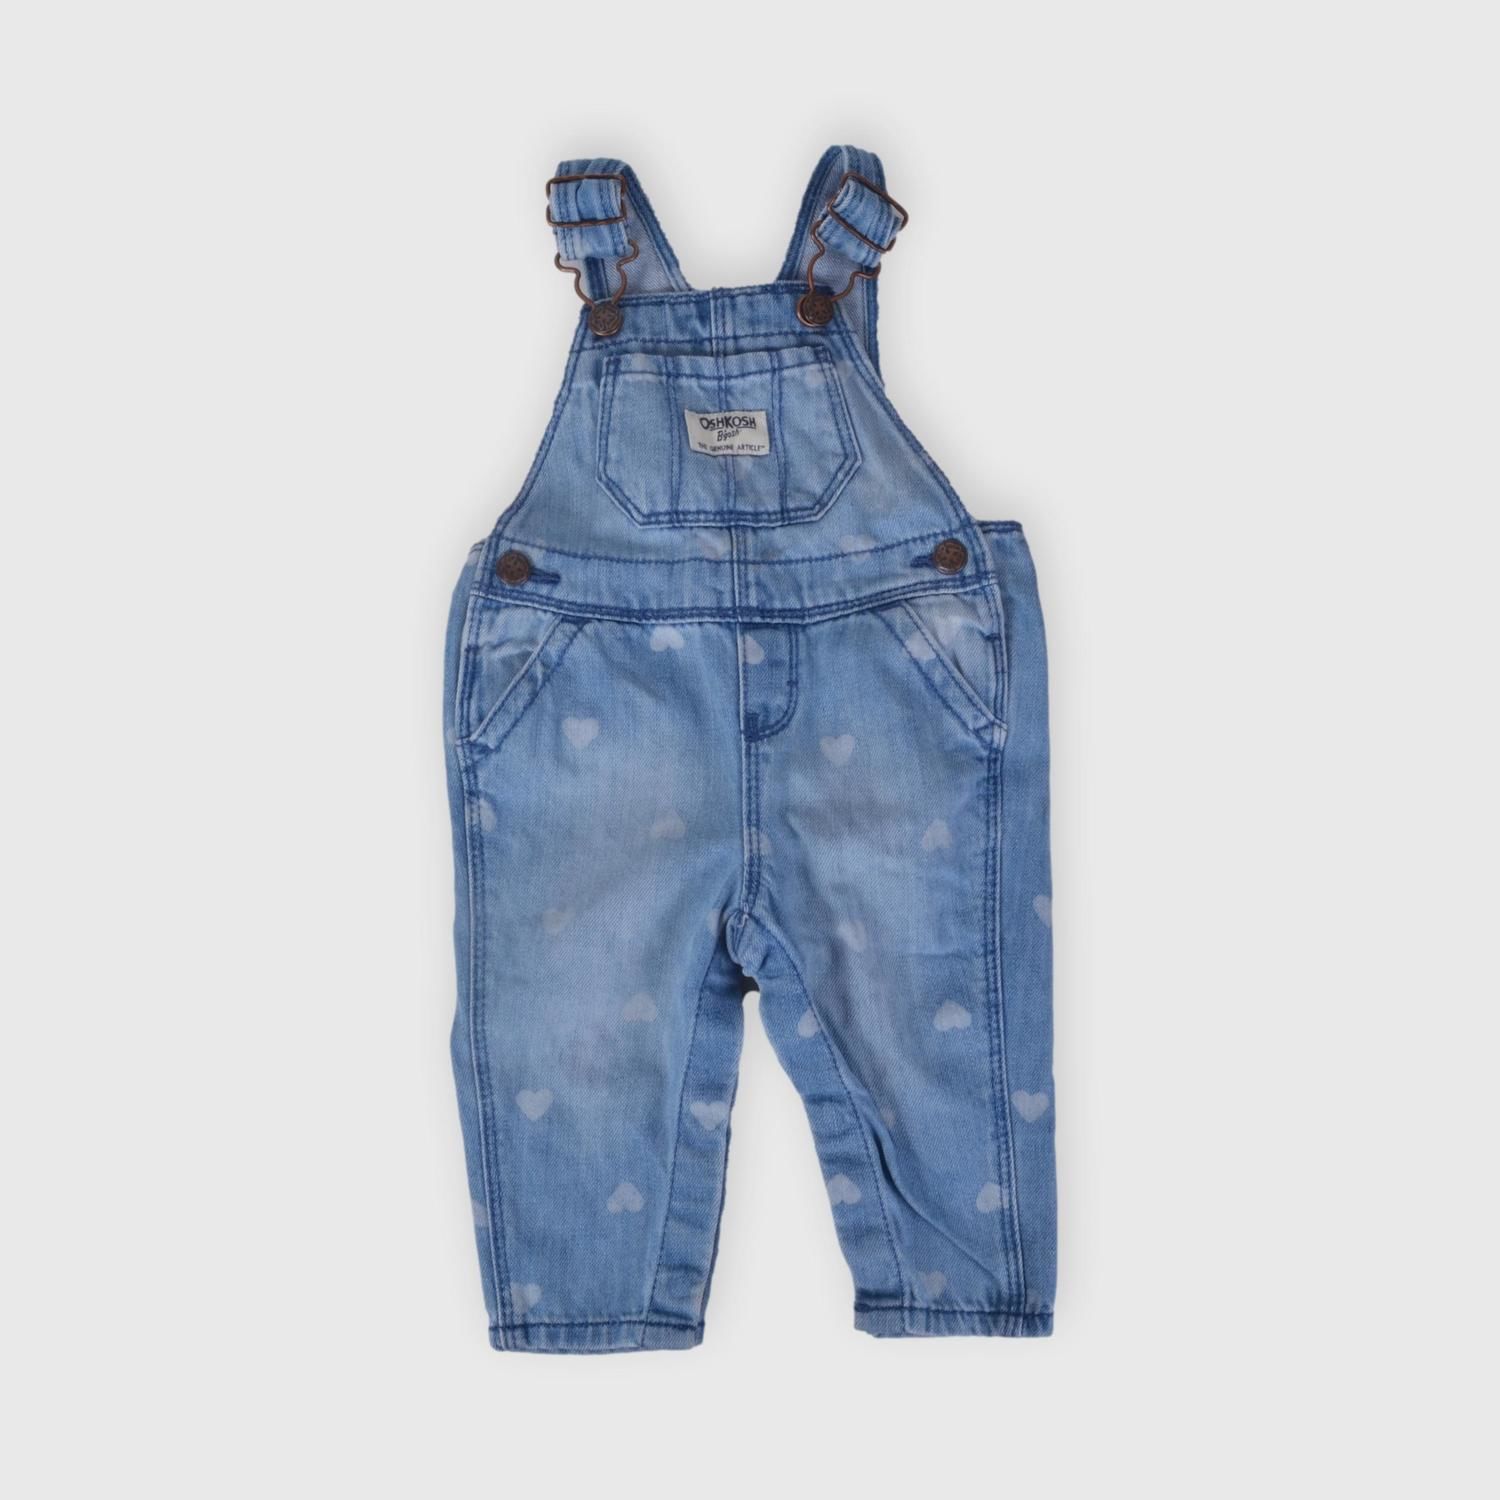 Enterito Oshkosh 6 m Ronda - Tienda online de ropa para bebés y niños